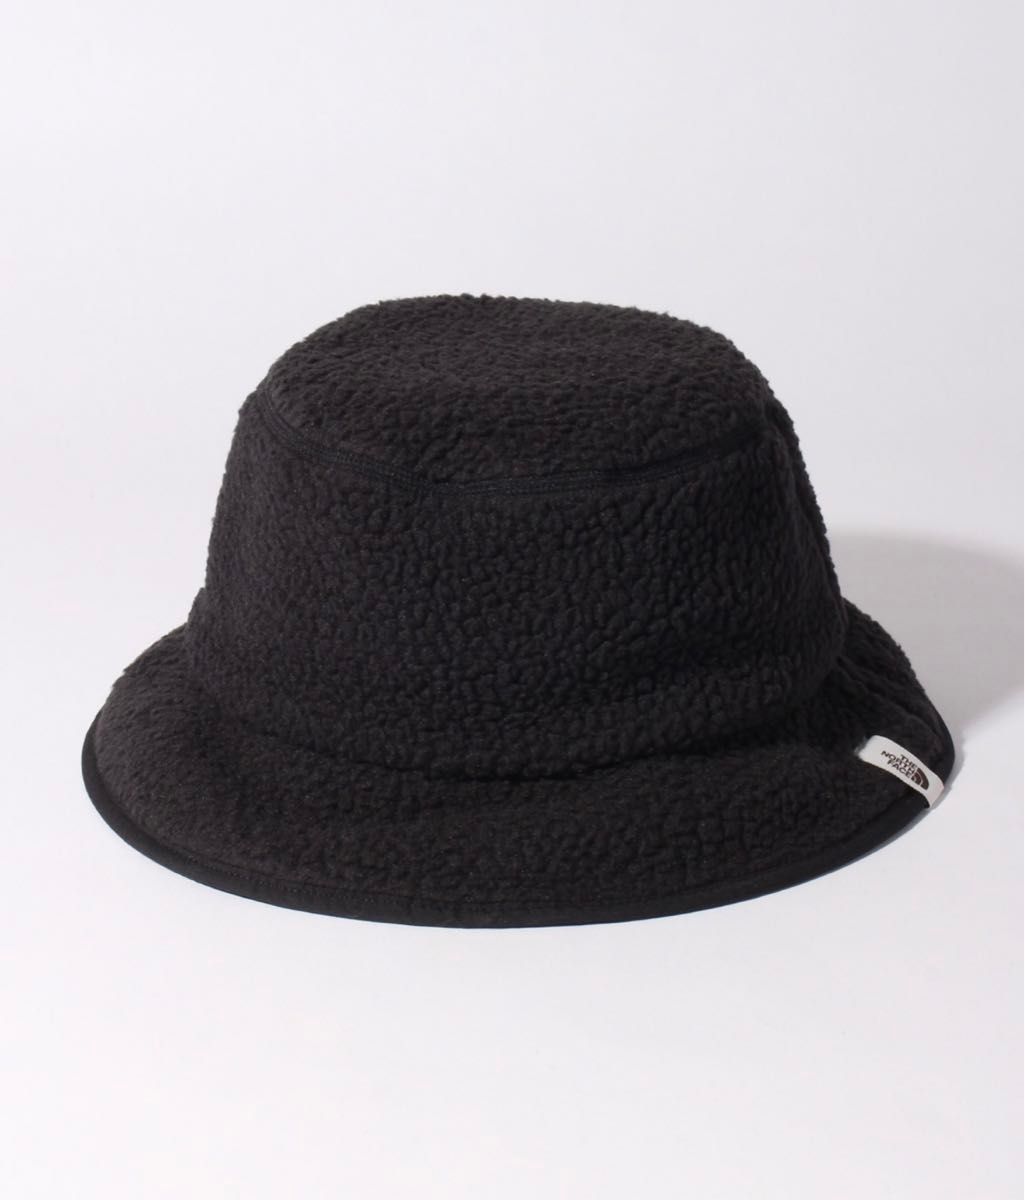 【THE NORTH FACE/ザノースフェイス】CRAGMONT BUCKET HAT/クラグモントバケットハット 帽子